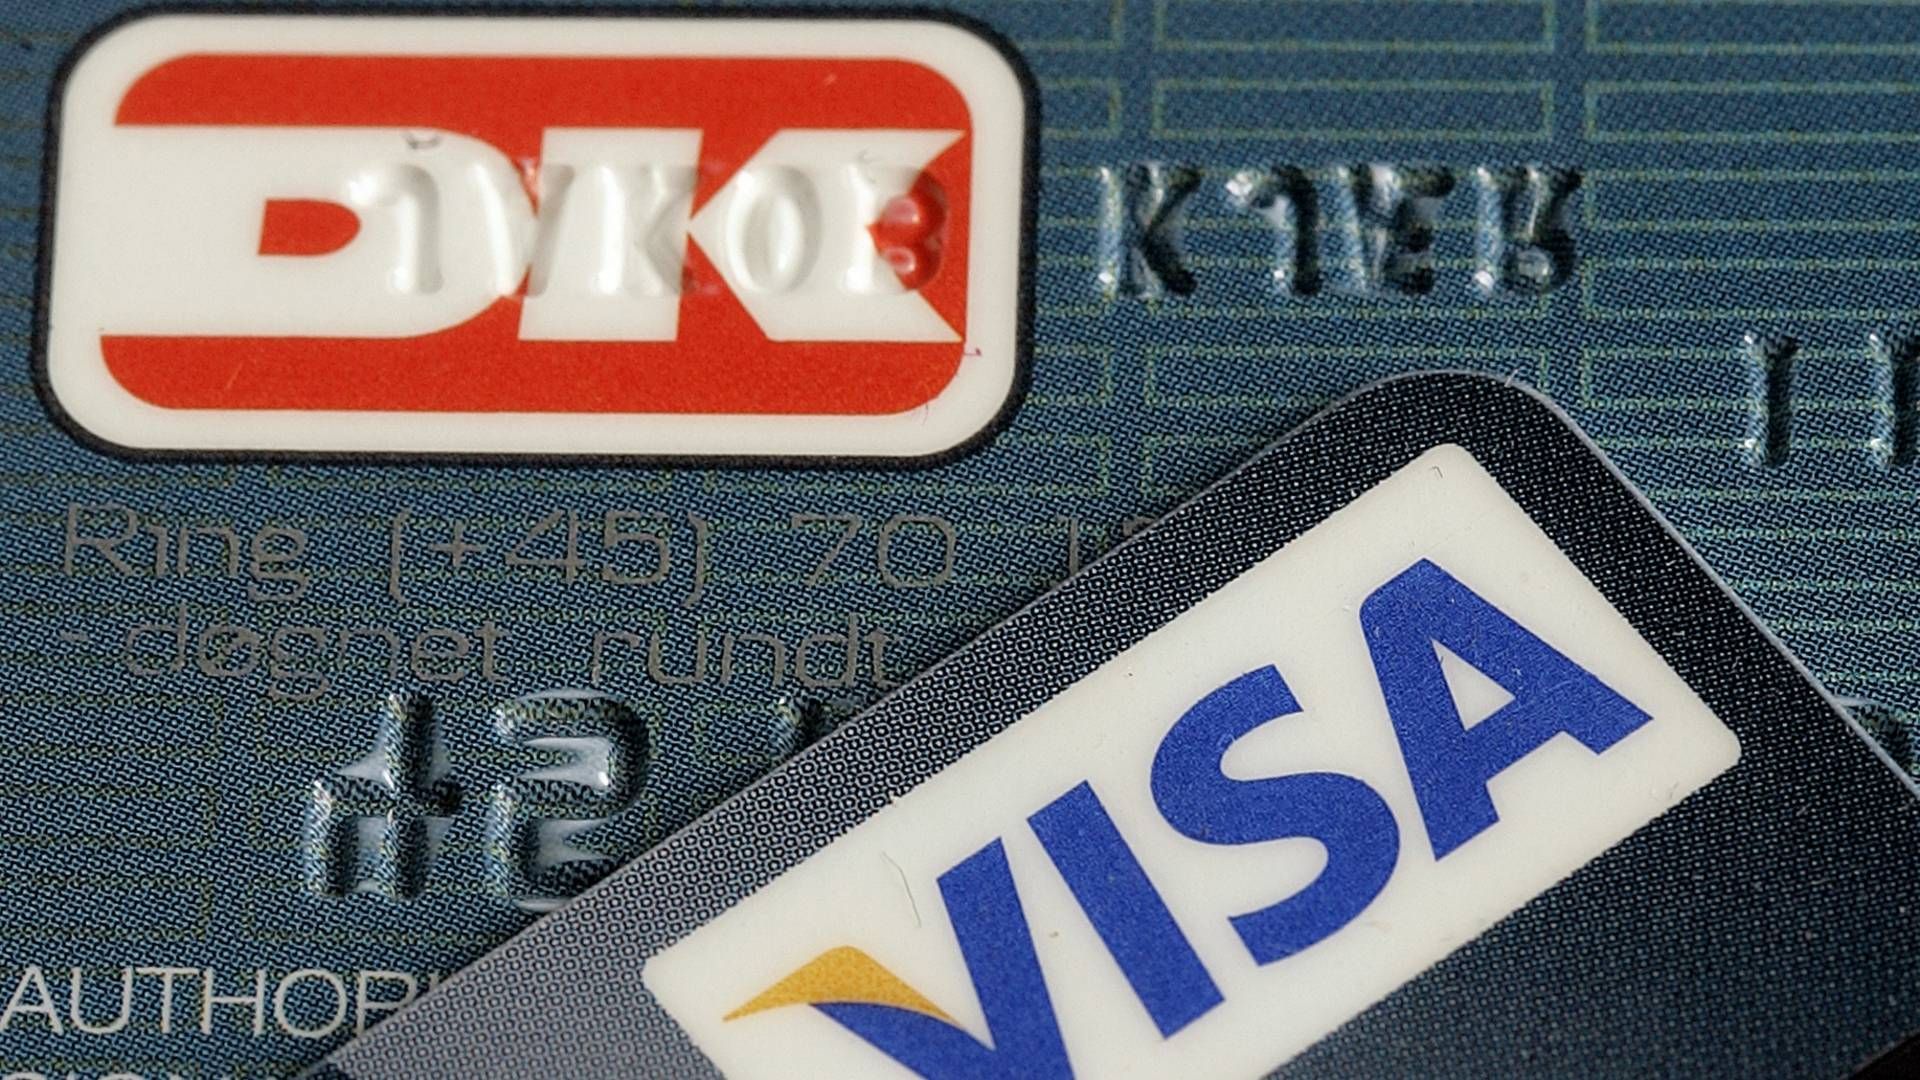 Mobilbetalinger og internationale betalingskort presser det 41 år gamle dankort i landets butikker som aldrig før, viser nye tal fra Nationalbanken. | Foto: Finn Frandsen